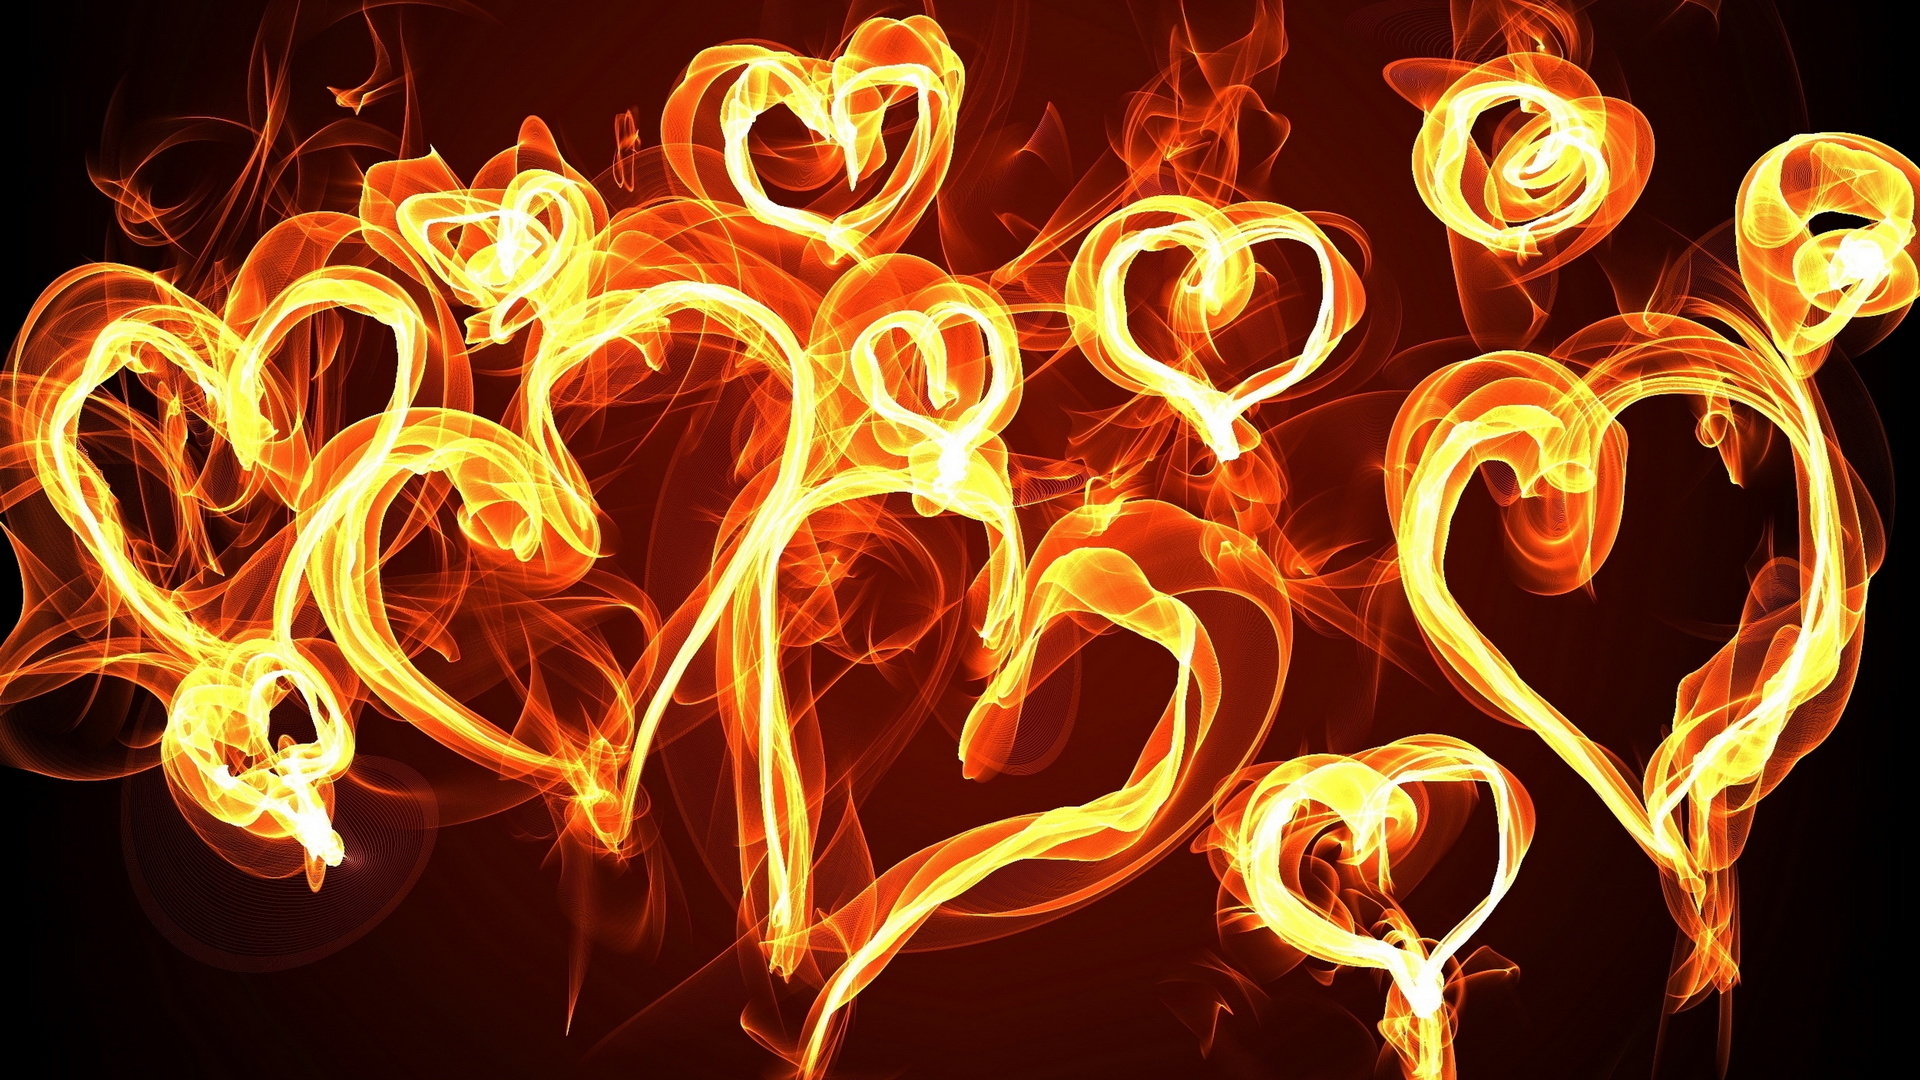 abstract, Fire, Flames, Love, Romance, Heart, Bright, Cg, Digital art Wallpaper